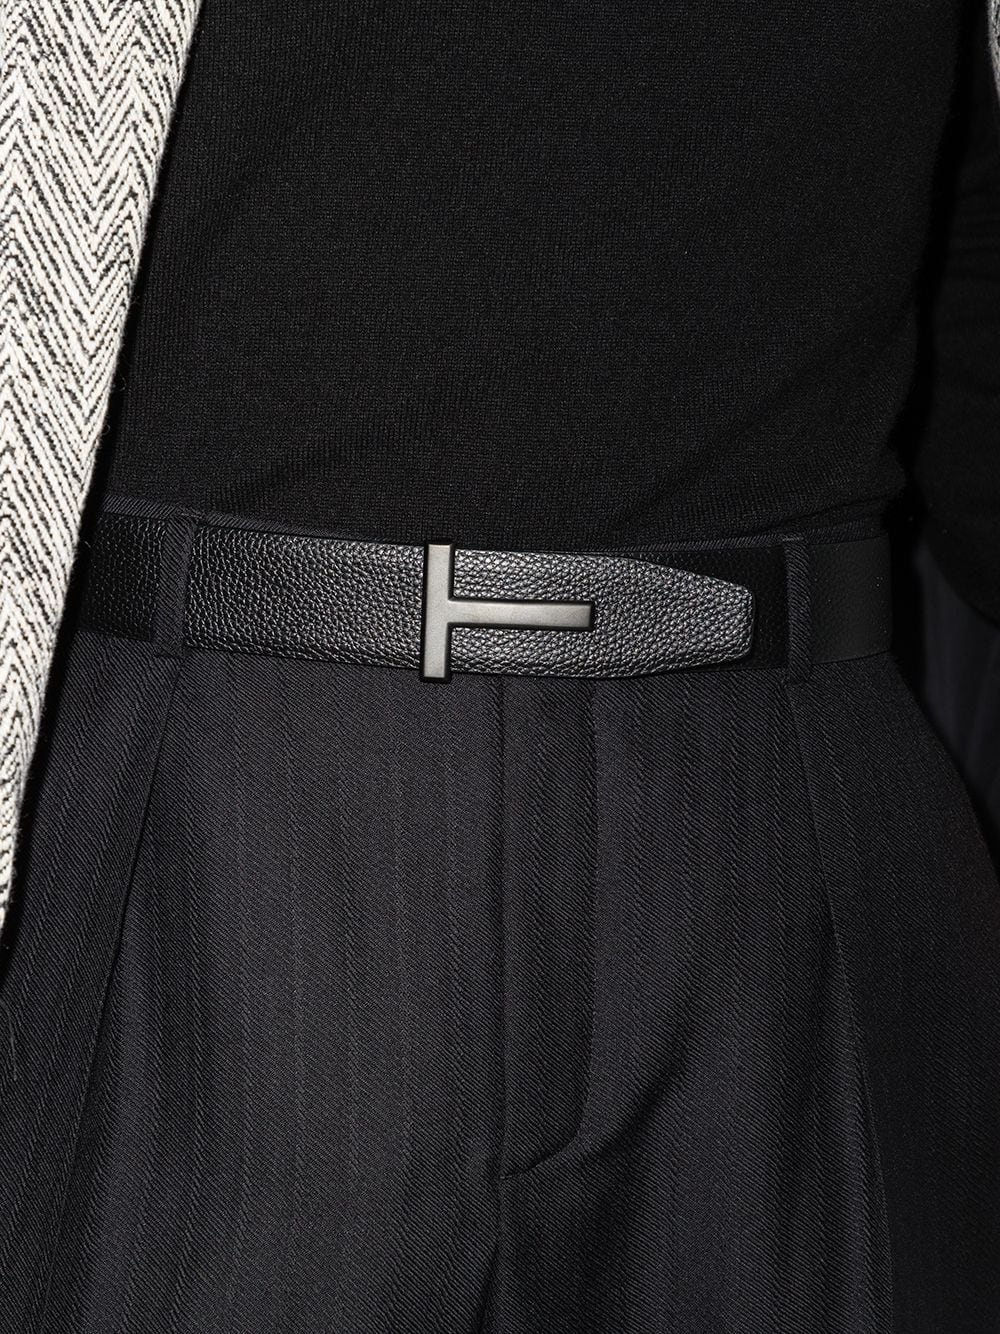 Cintura reversibile in pelle nera con fibbia con logo T